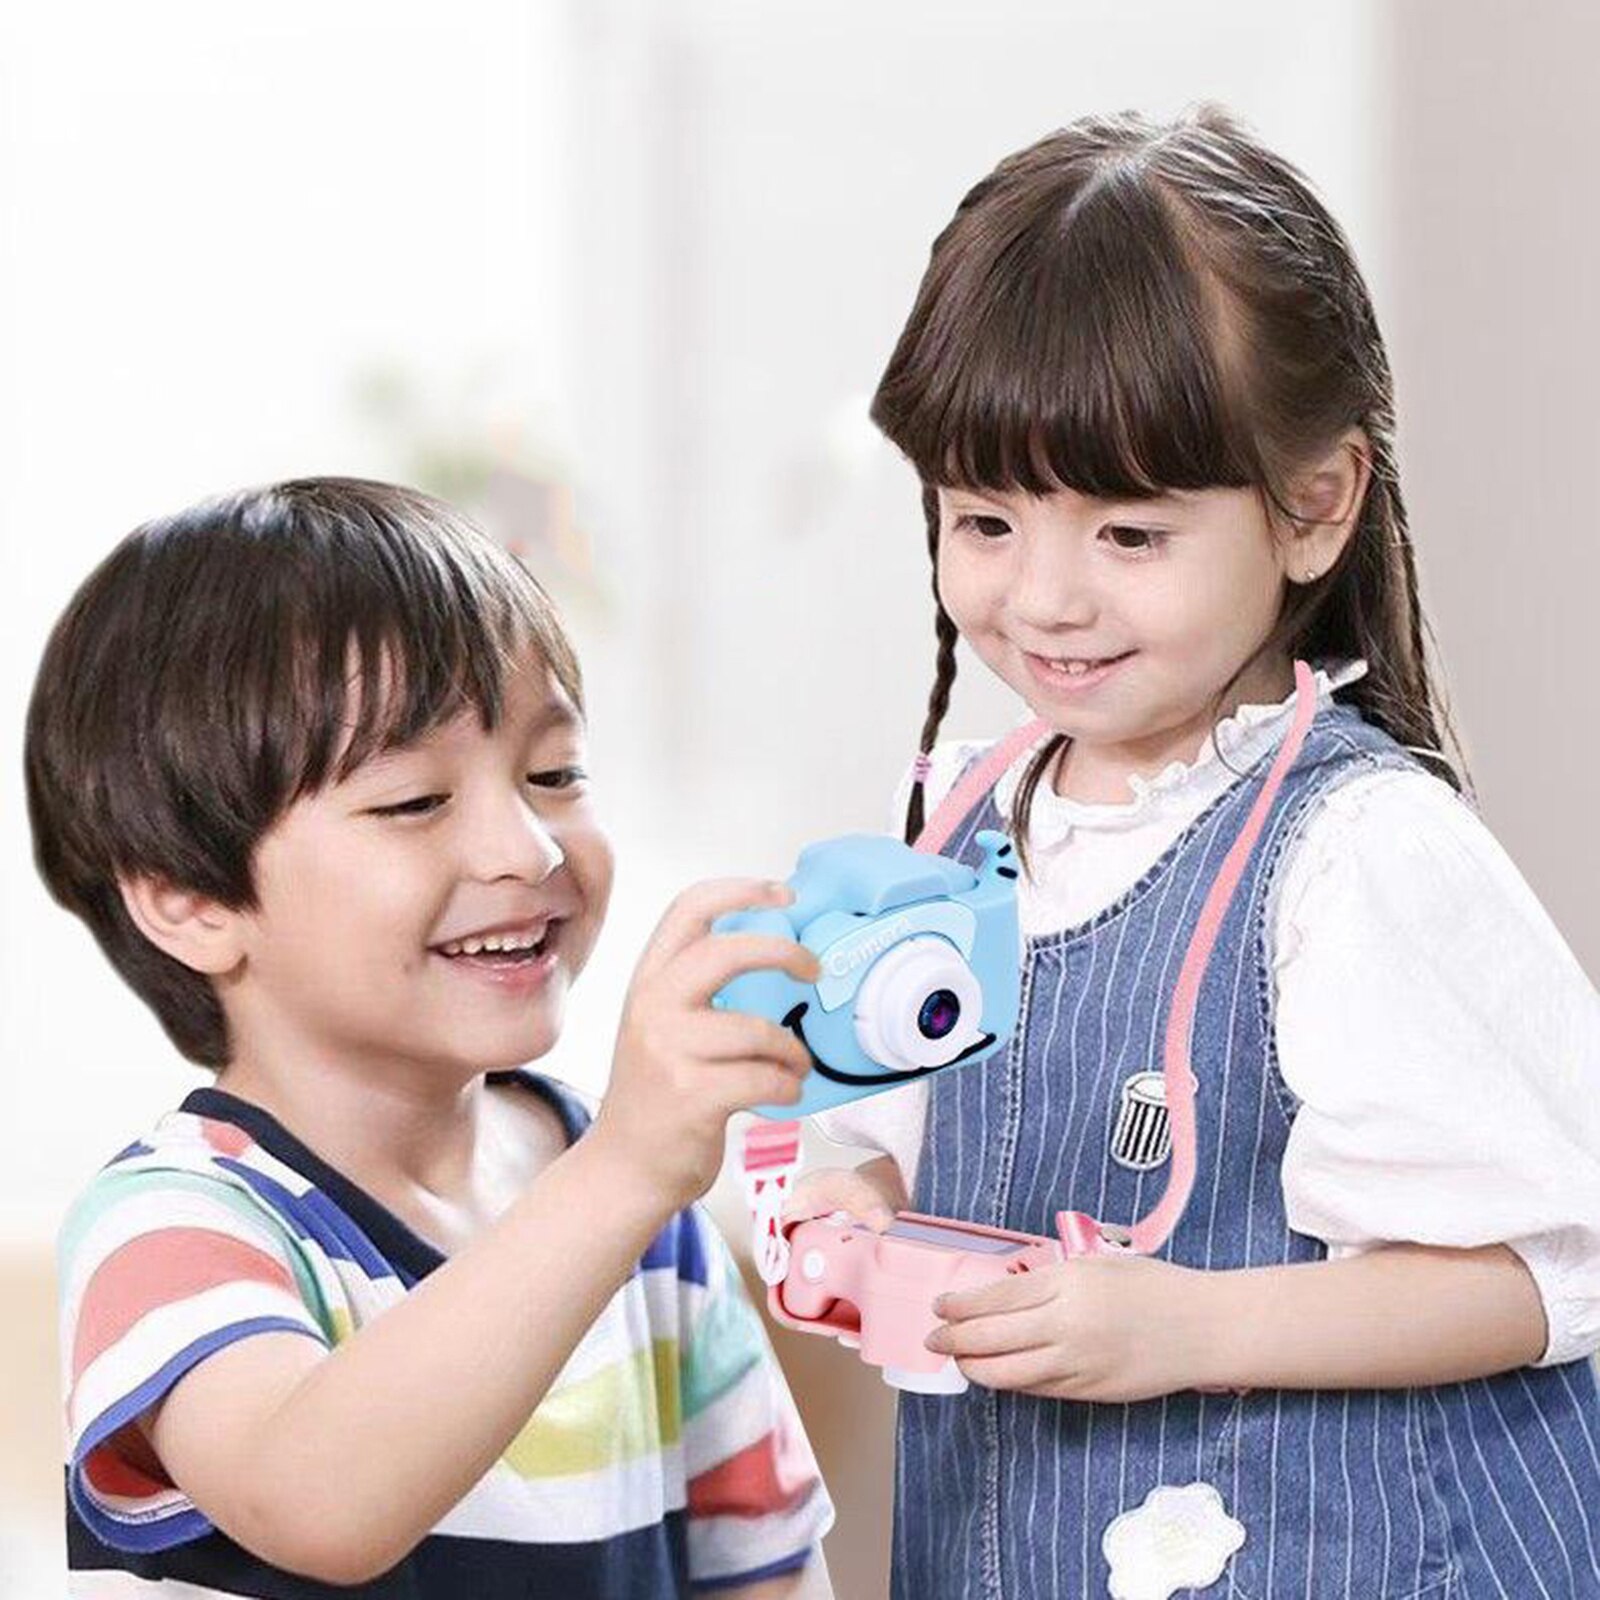 2.0 ''Mini Digitale Kinderen Camera Hd 1080P Ips Camera Speelgoed Cadeau Voor Kinderen: Blue Cow